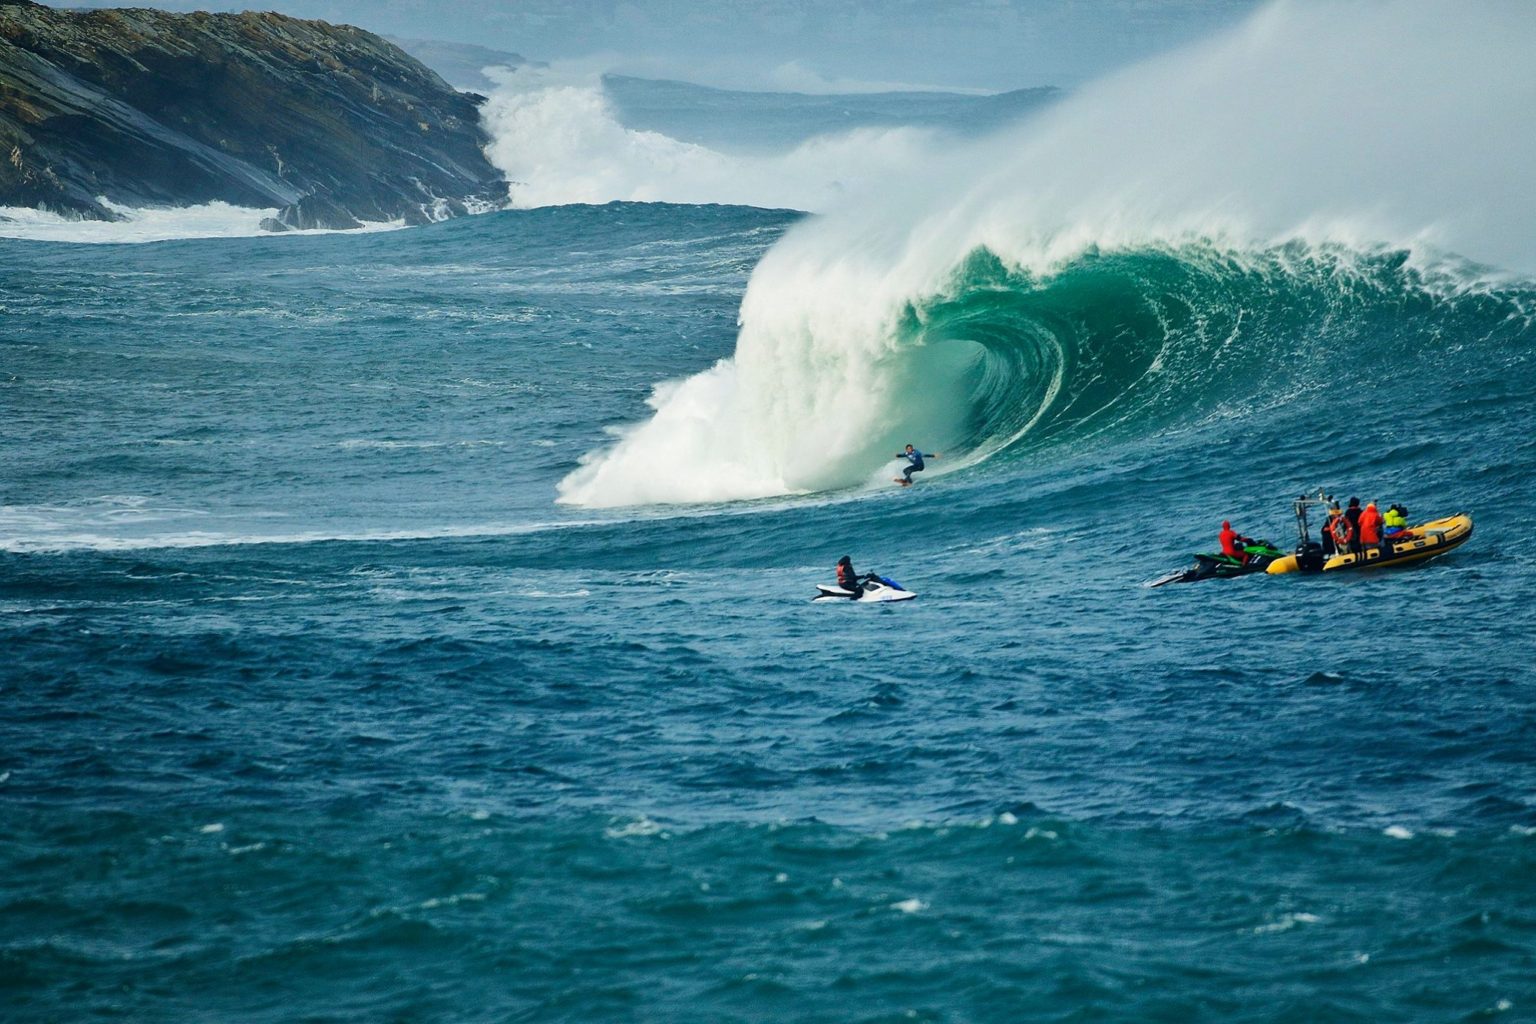 illa pancha callenge campeonato olas grandes galicia surf olas grandes tow in big wave